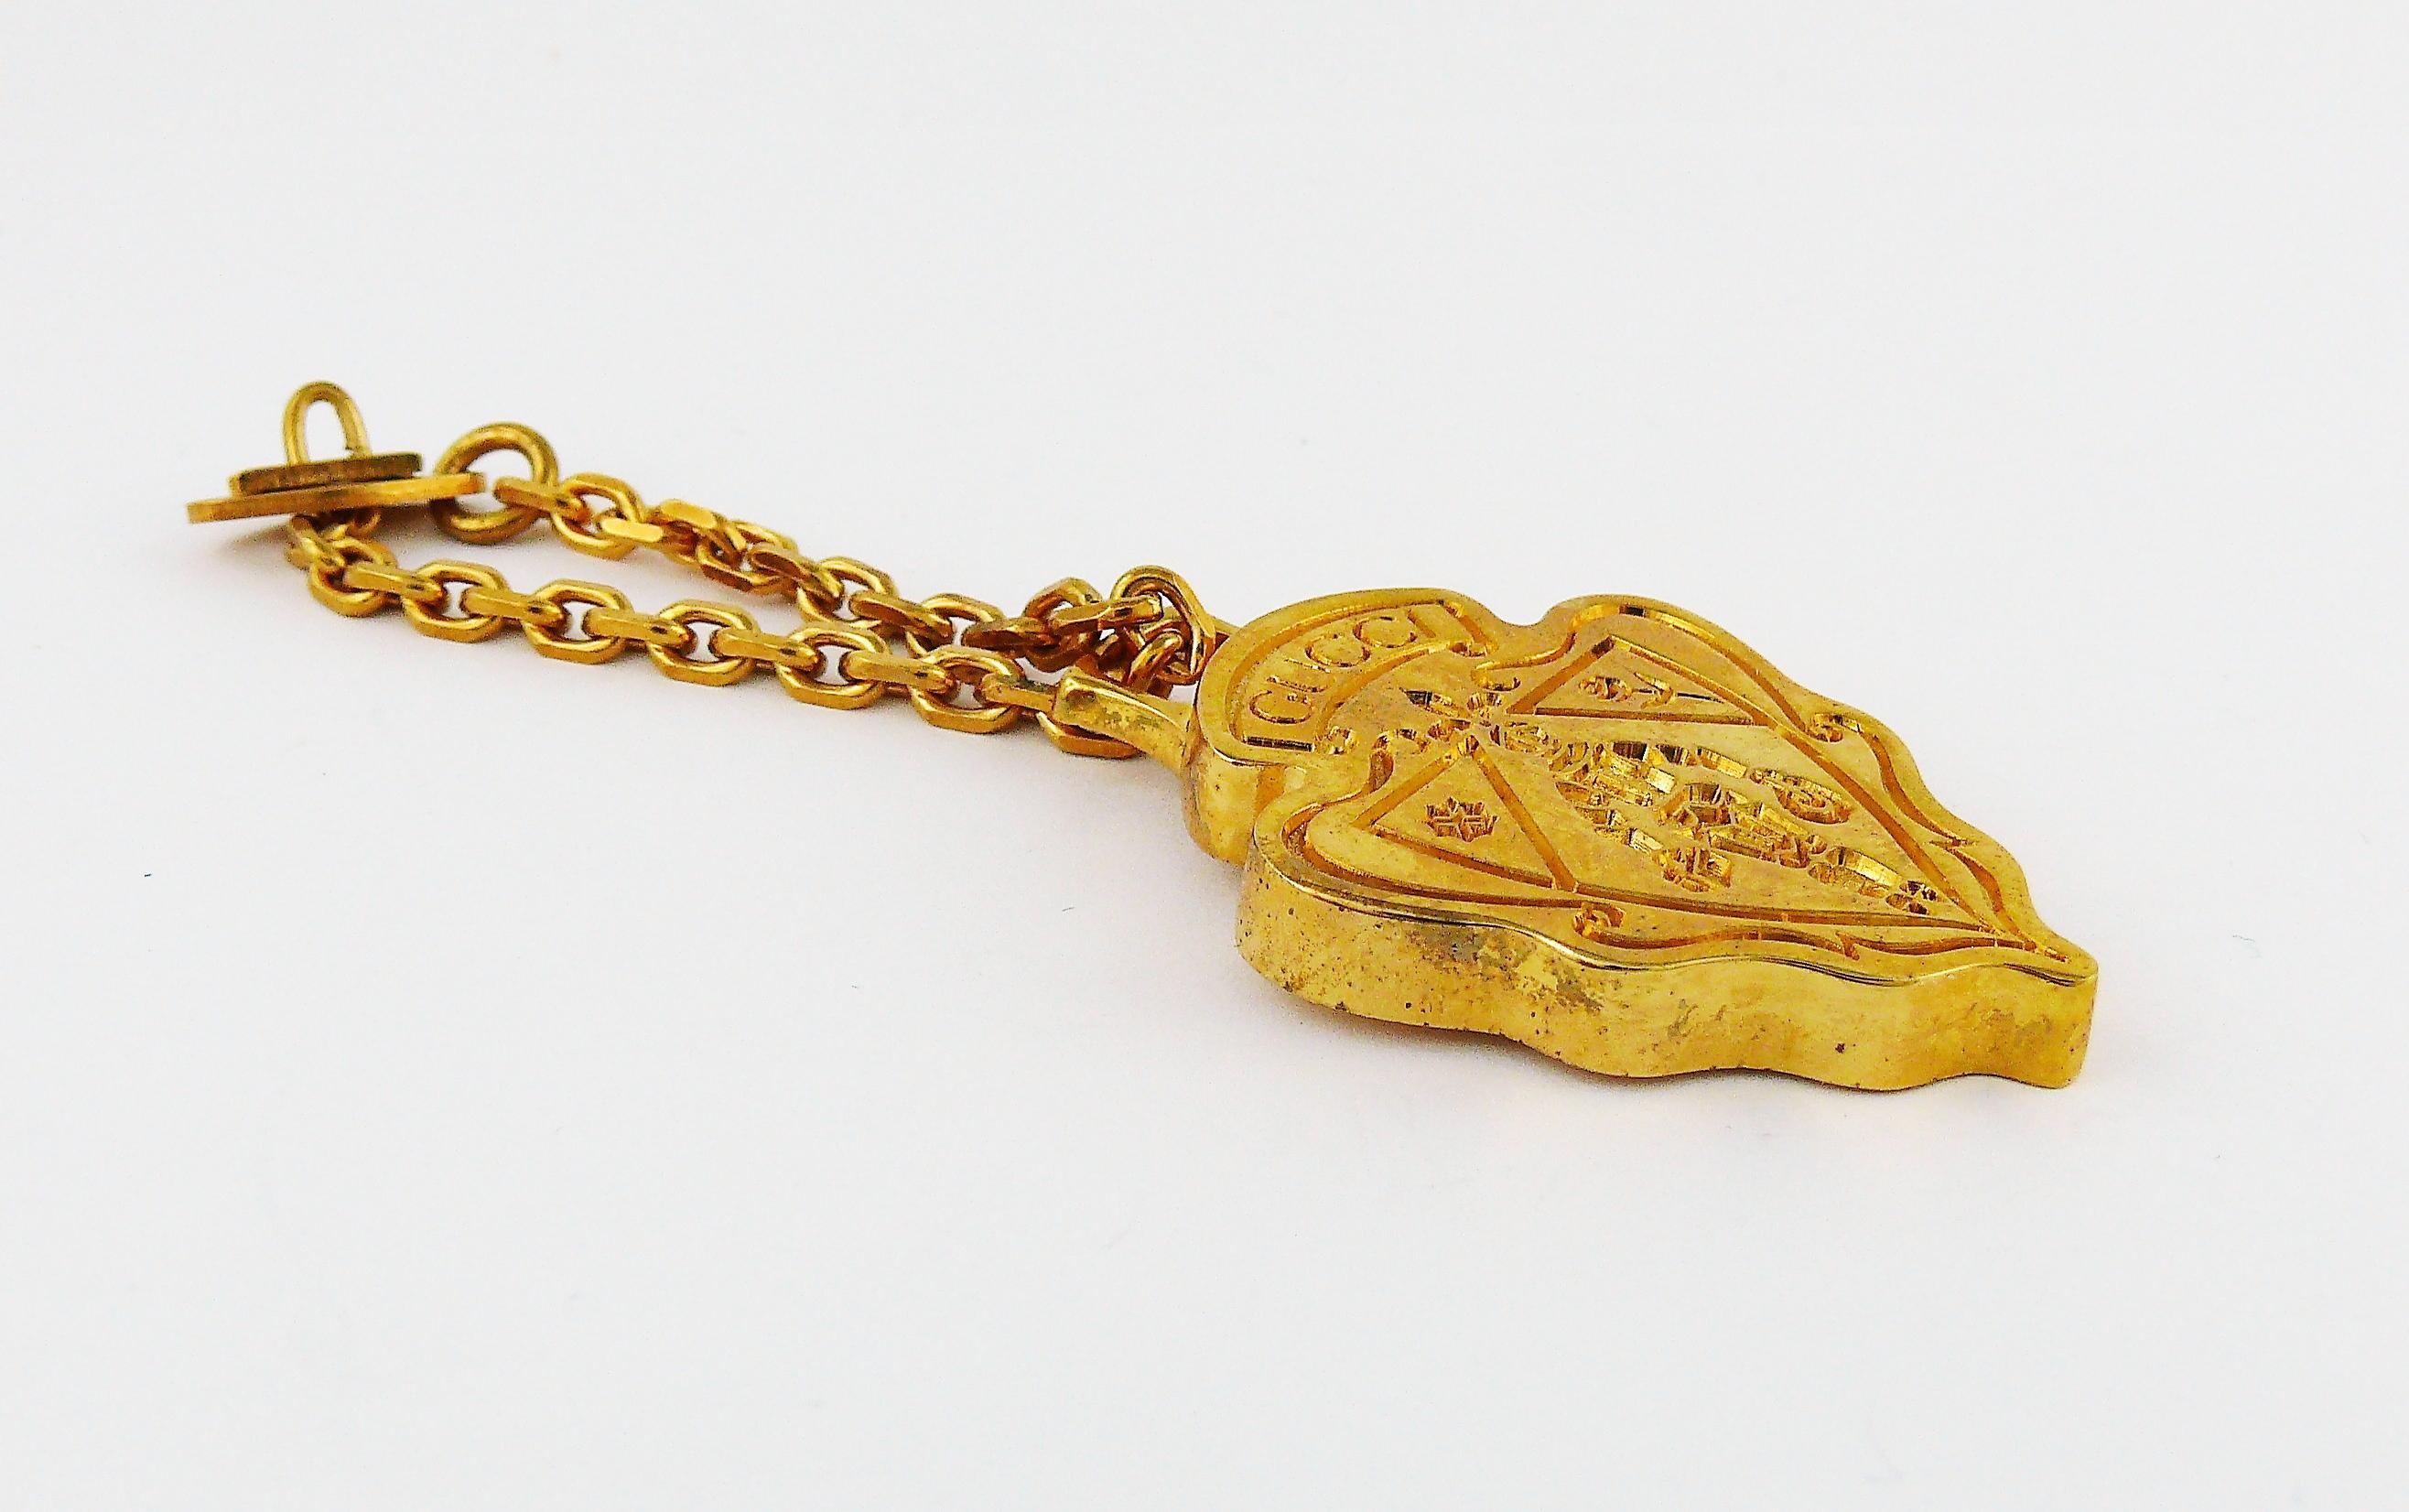 GUCCI Parfums goldfarbenes Accessoire mit Wappen.

Kann zum Beispiel als Schlüsselanhänger oder Taschenanhänger verwendet werden.

Dieses Wappen wurde ursprünglich mit dem Duft GUCCI NOBILE parfümiert. 

GUCCI-Prägung auf der Vorderseite.
Auf der